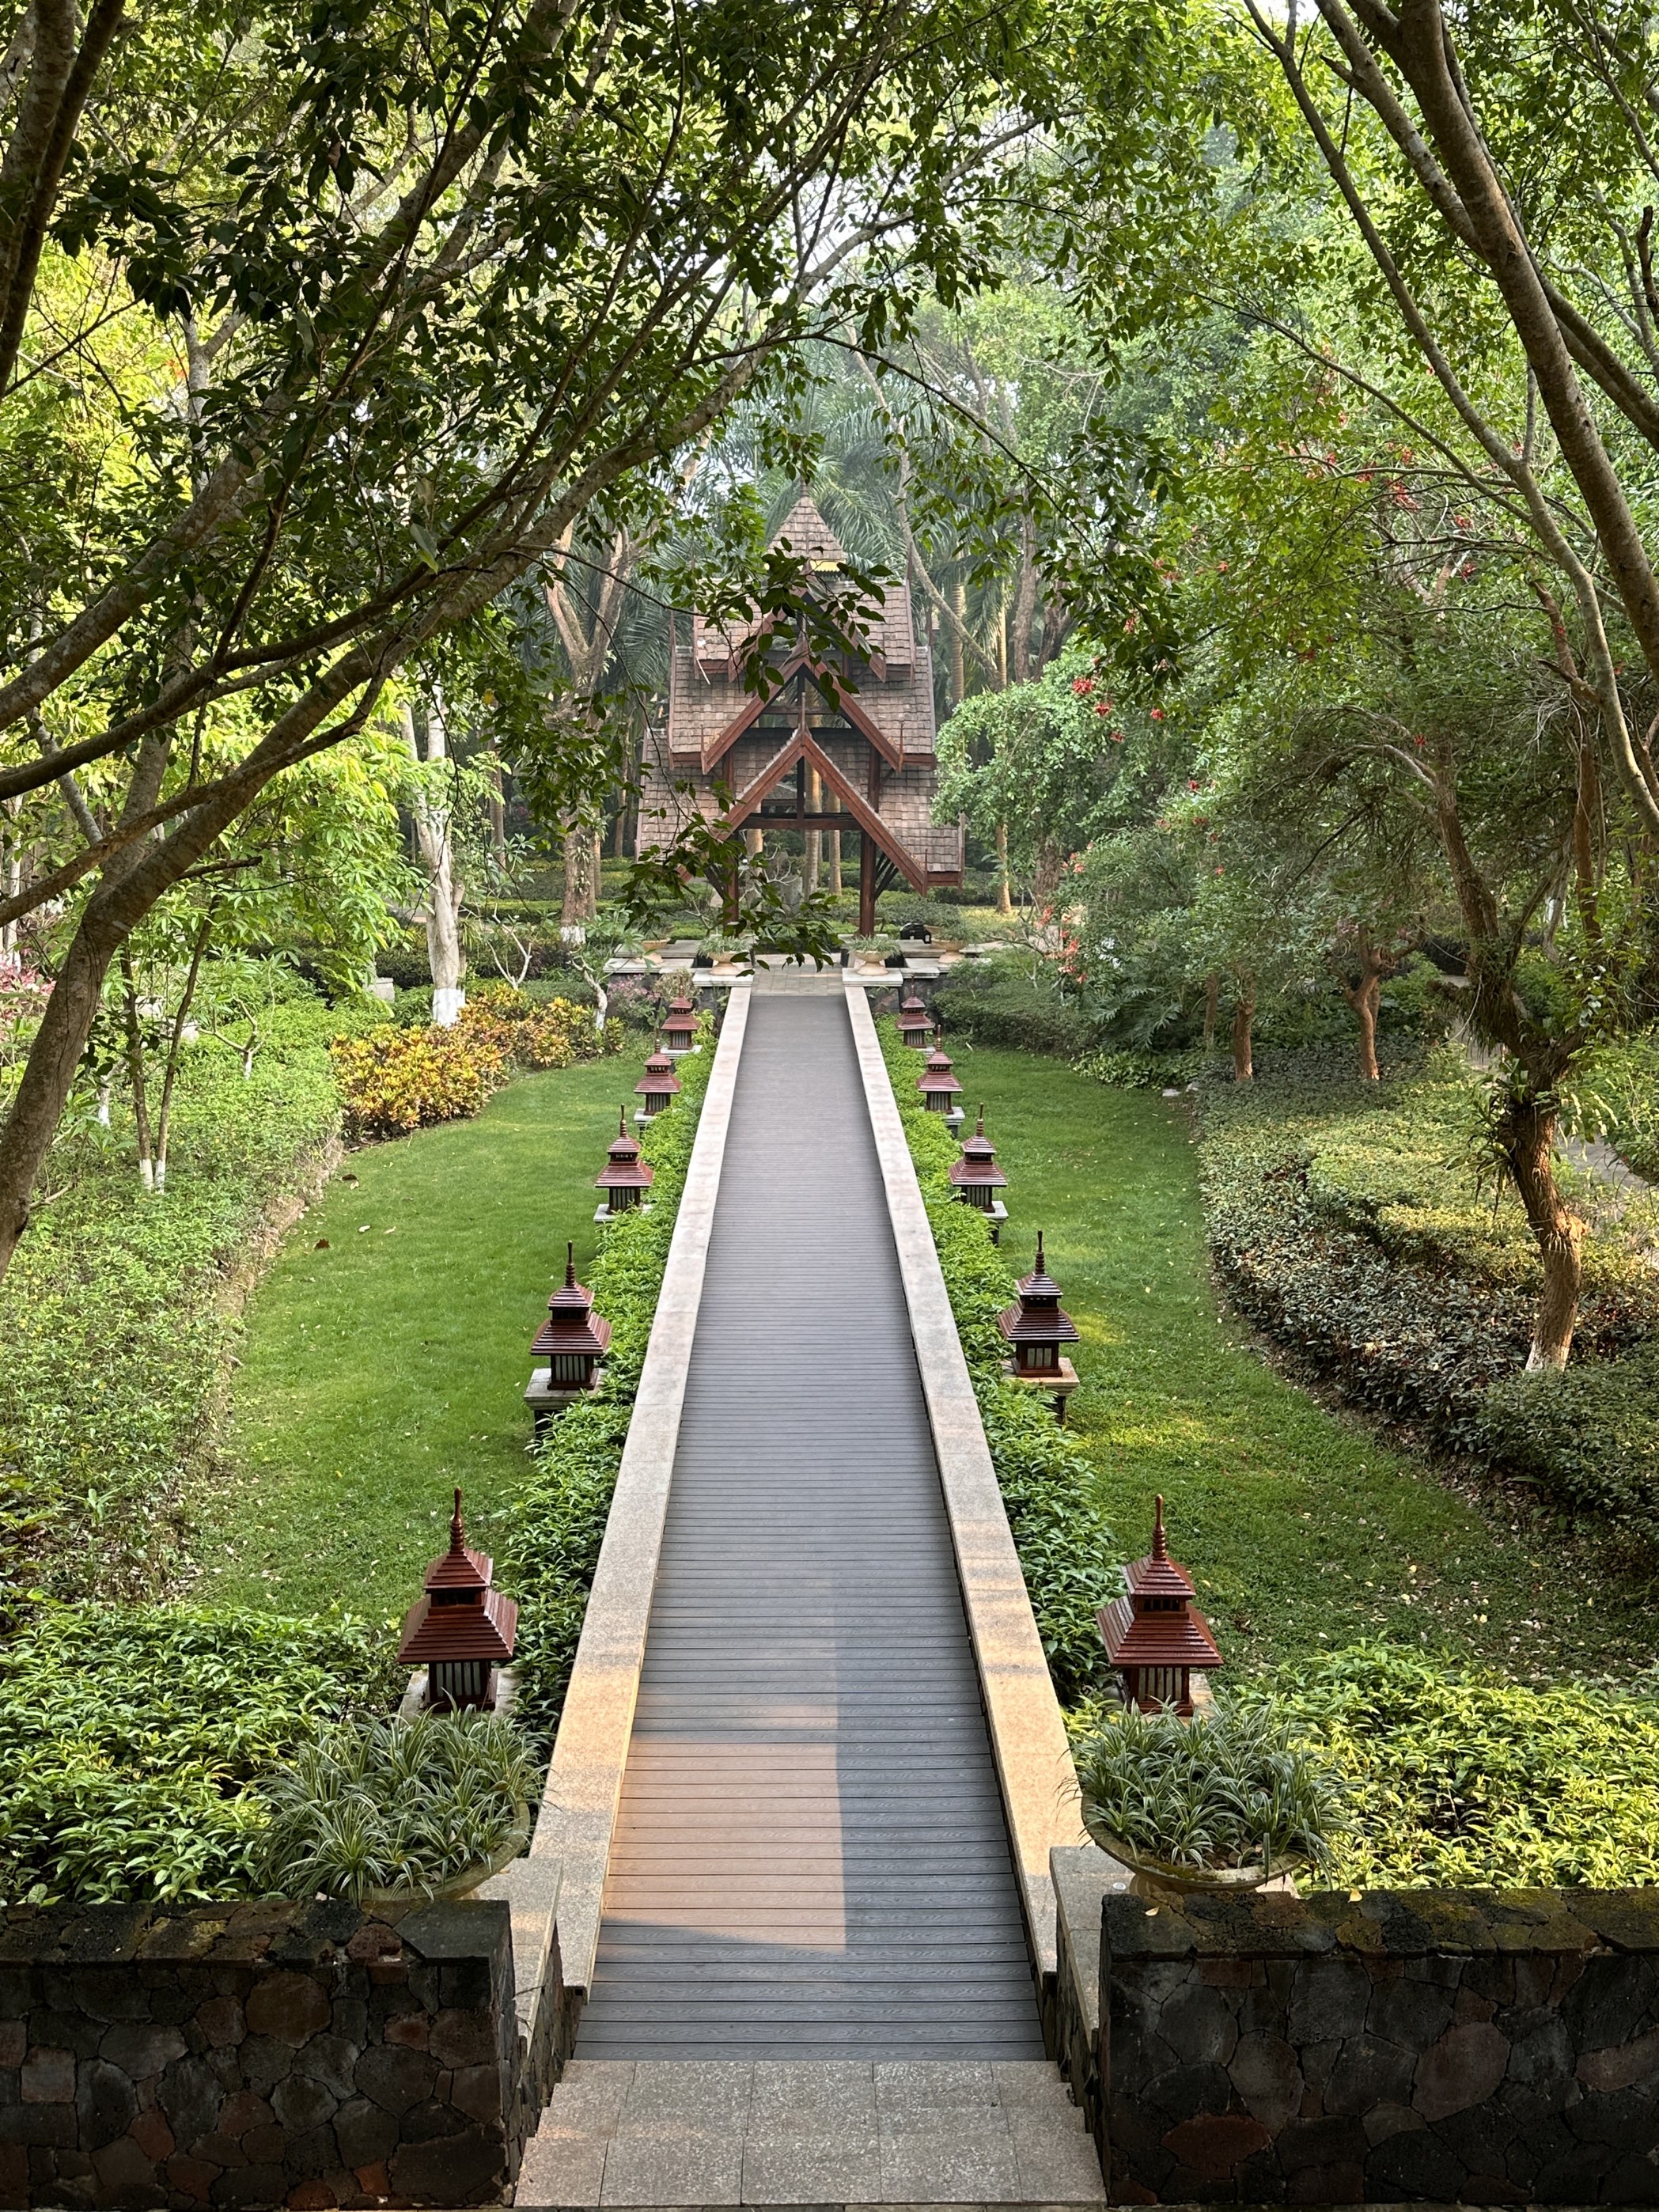 安纳塔拉的设计充满了浓厚的热带风情，园区植被丰富绿树成荫，每一处都让人感受到无比的放松和愉悦。 服务